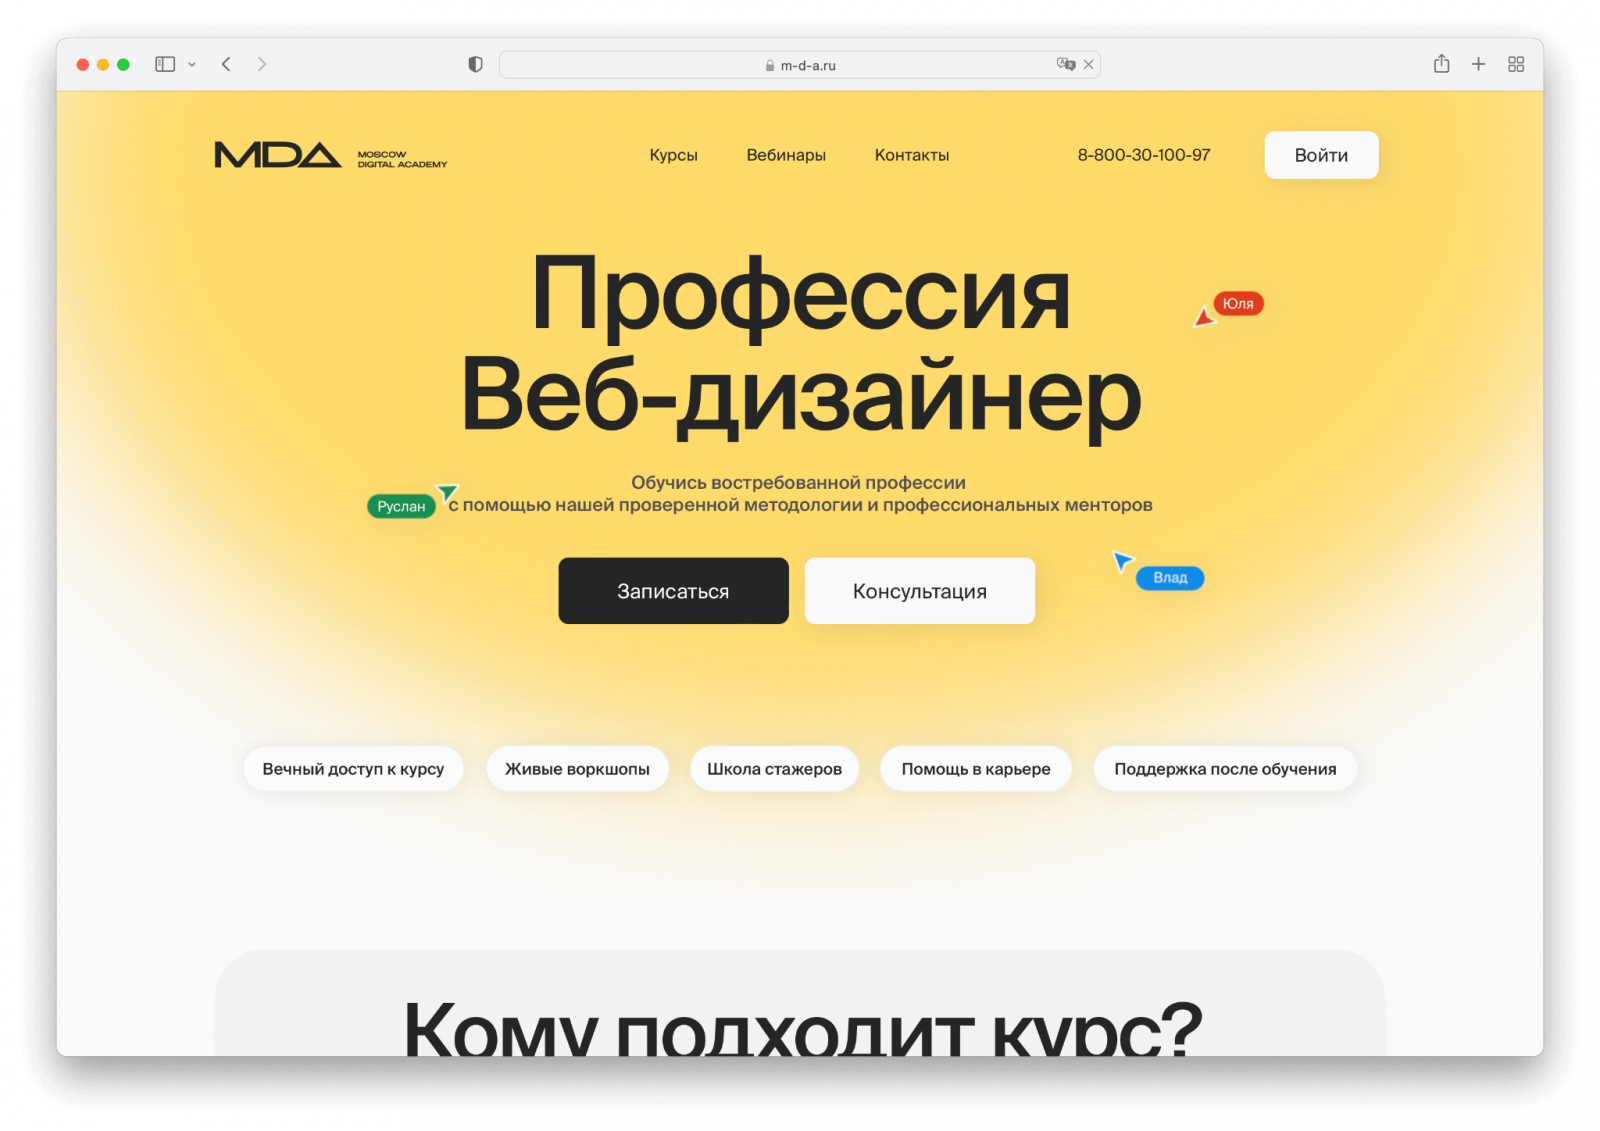 Moscow Digital Academy – UX/UI дизайнер. Обучение веб-дизайну, графическому дизайну, java-разработке, motion-дизайну